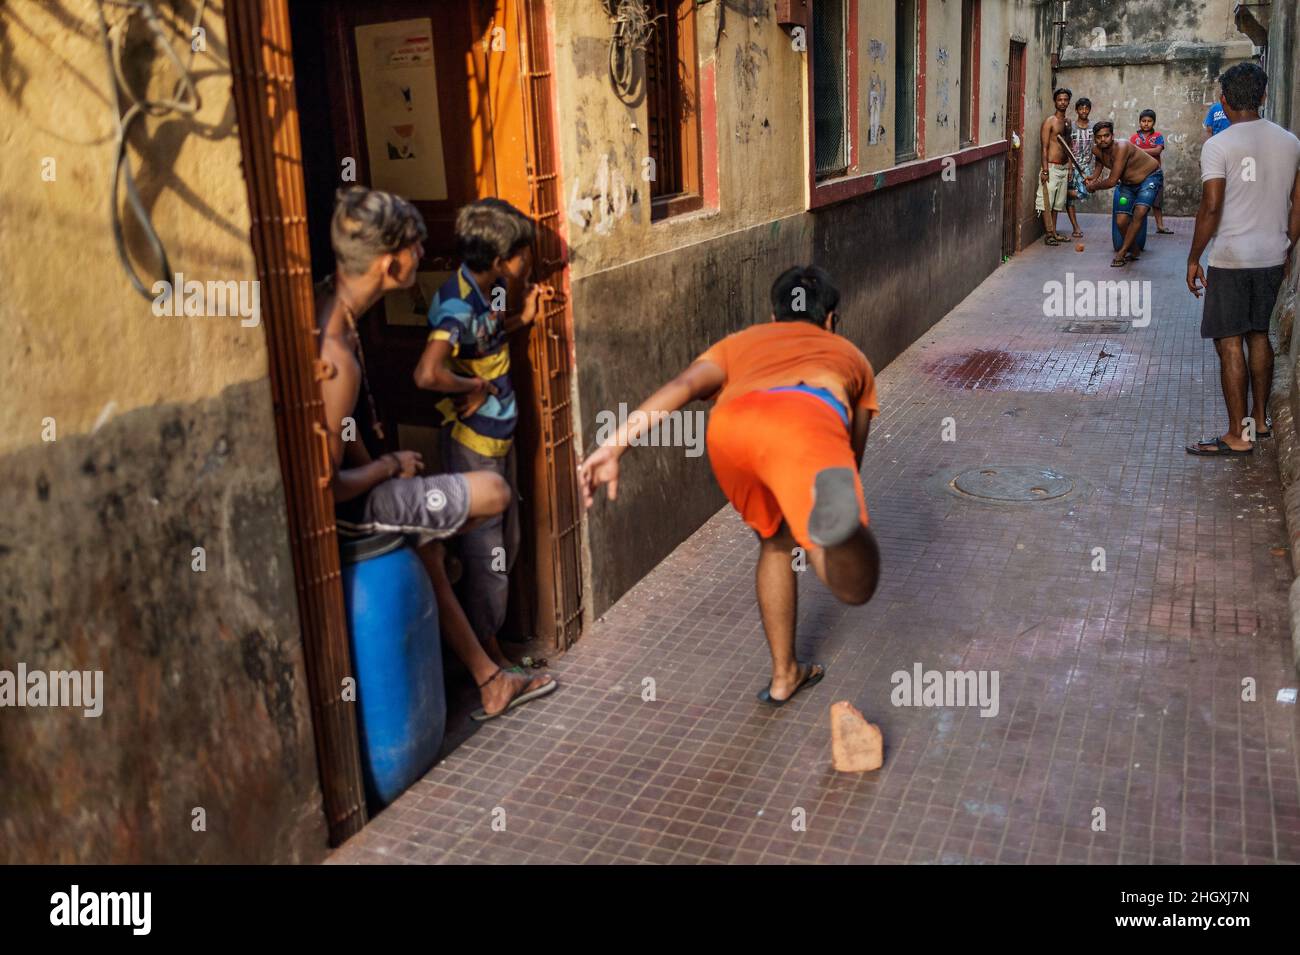 Boys play cricket in the streets of Kolkata, India Stock Photo